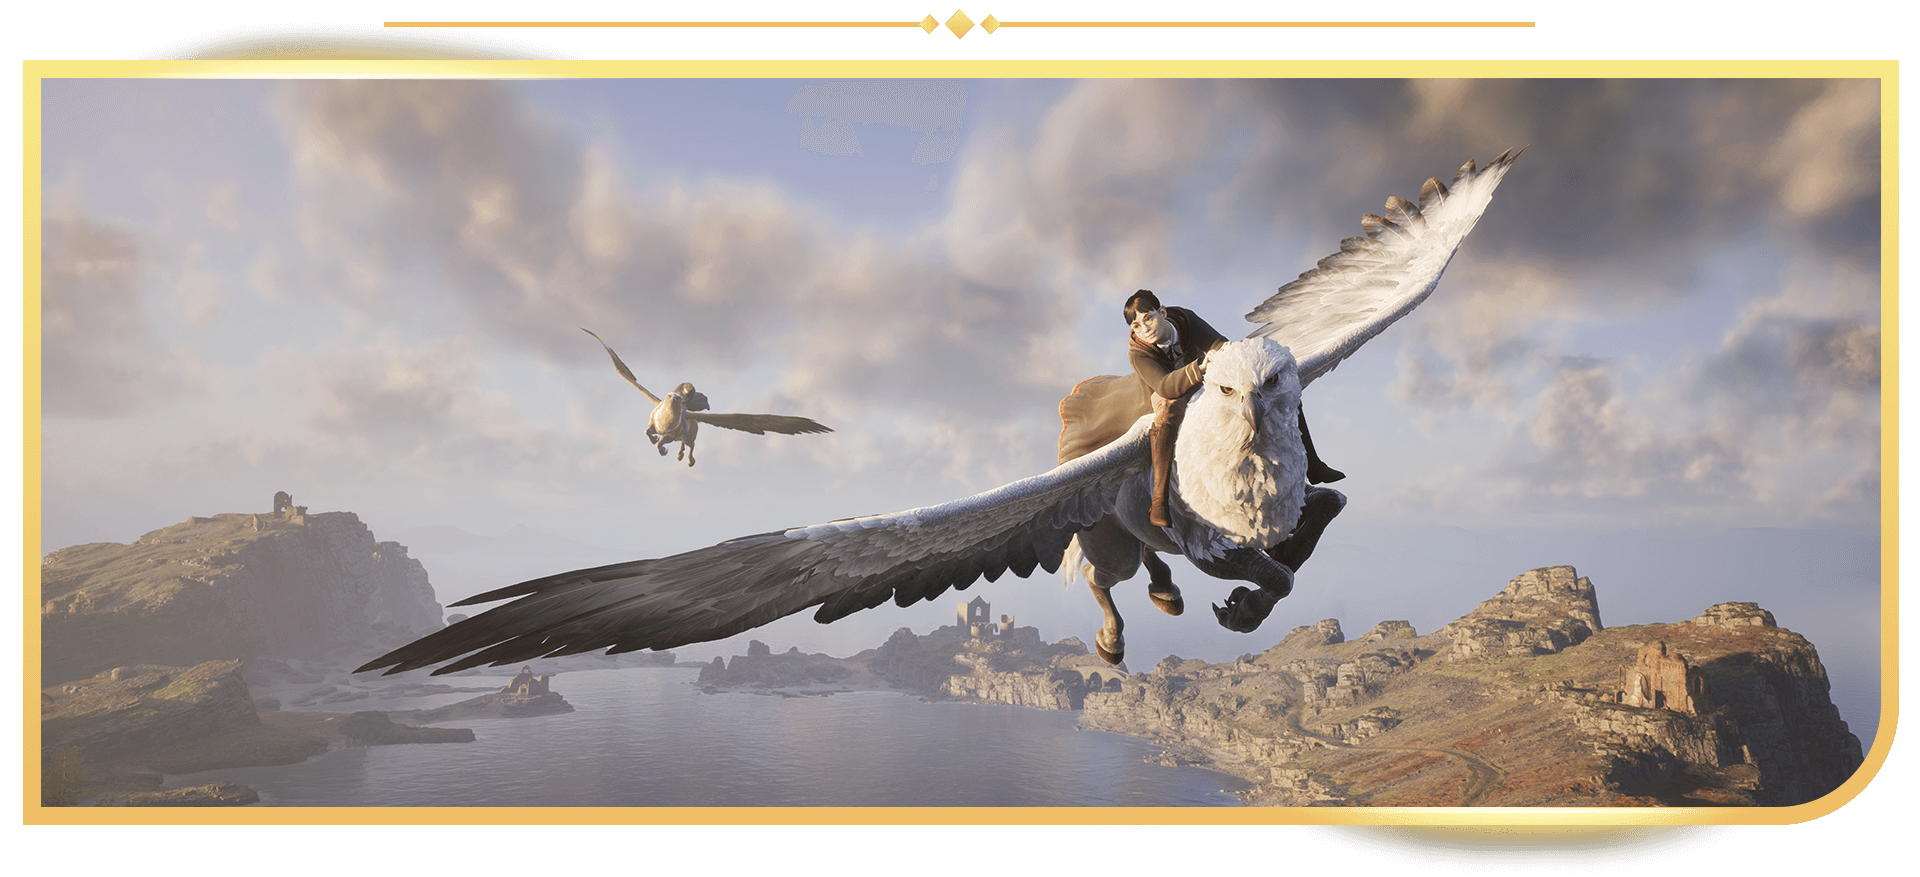 《霍格華茲的傳承》螢幕截圖，角色乘鷹馬飛行